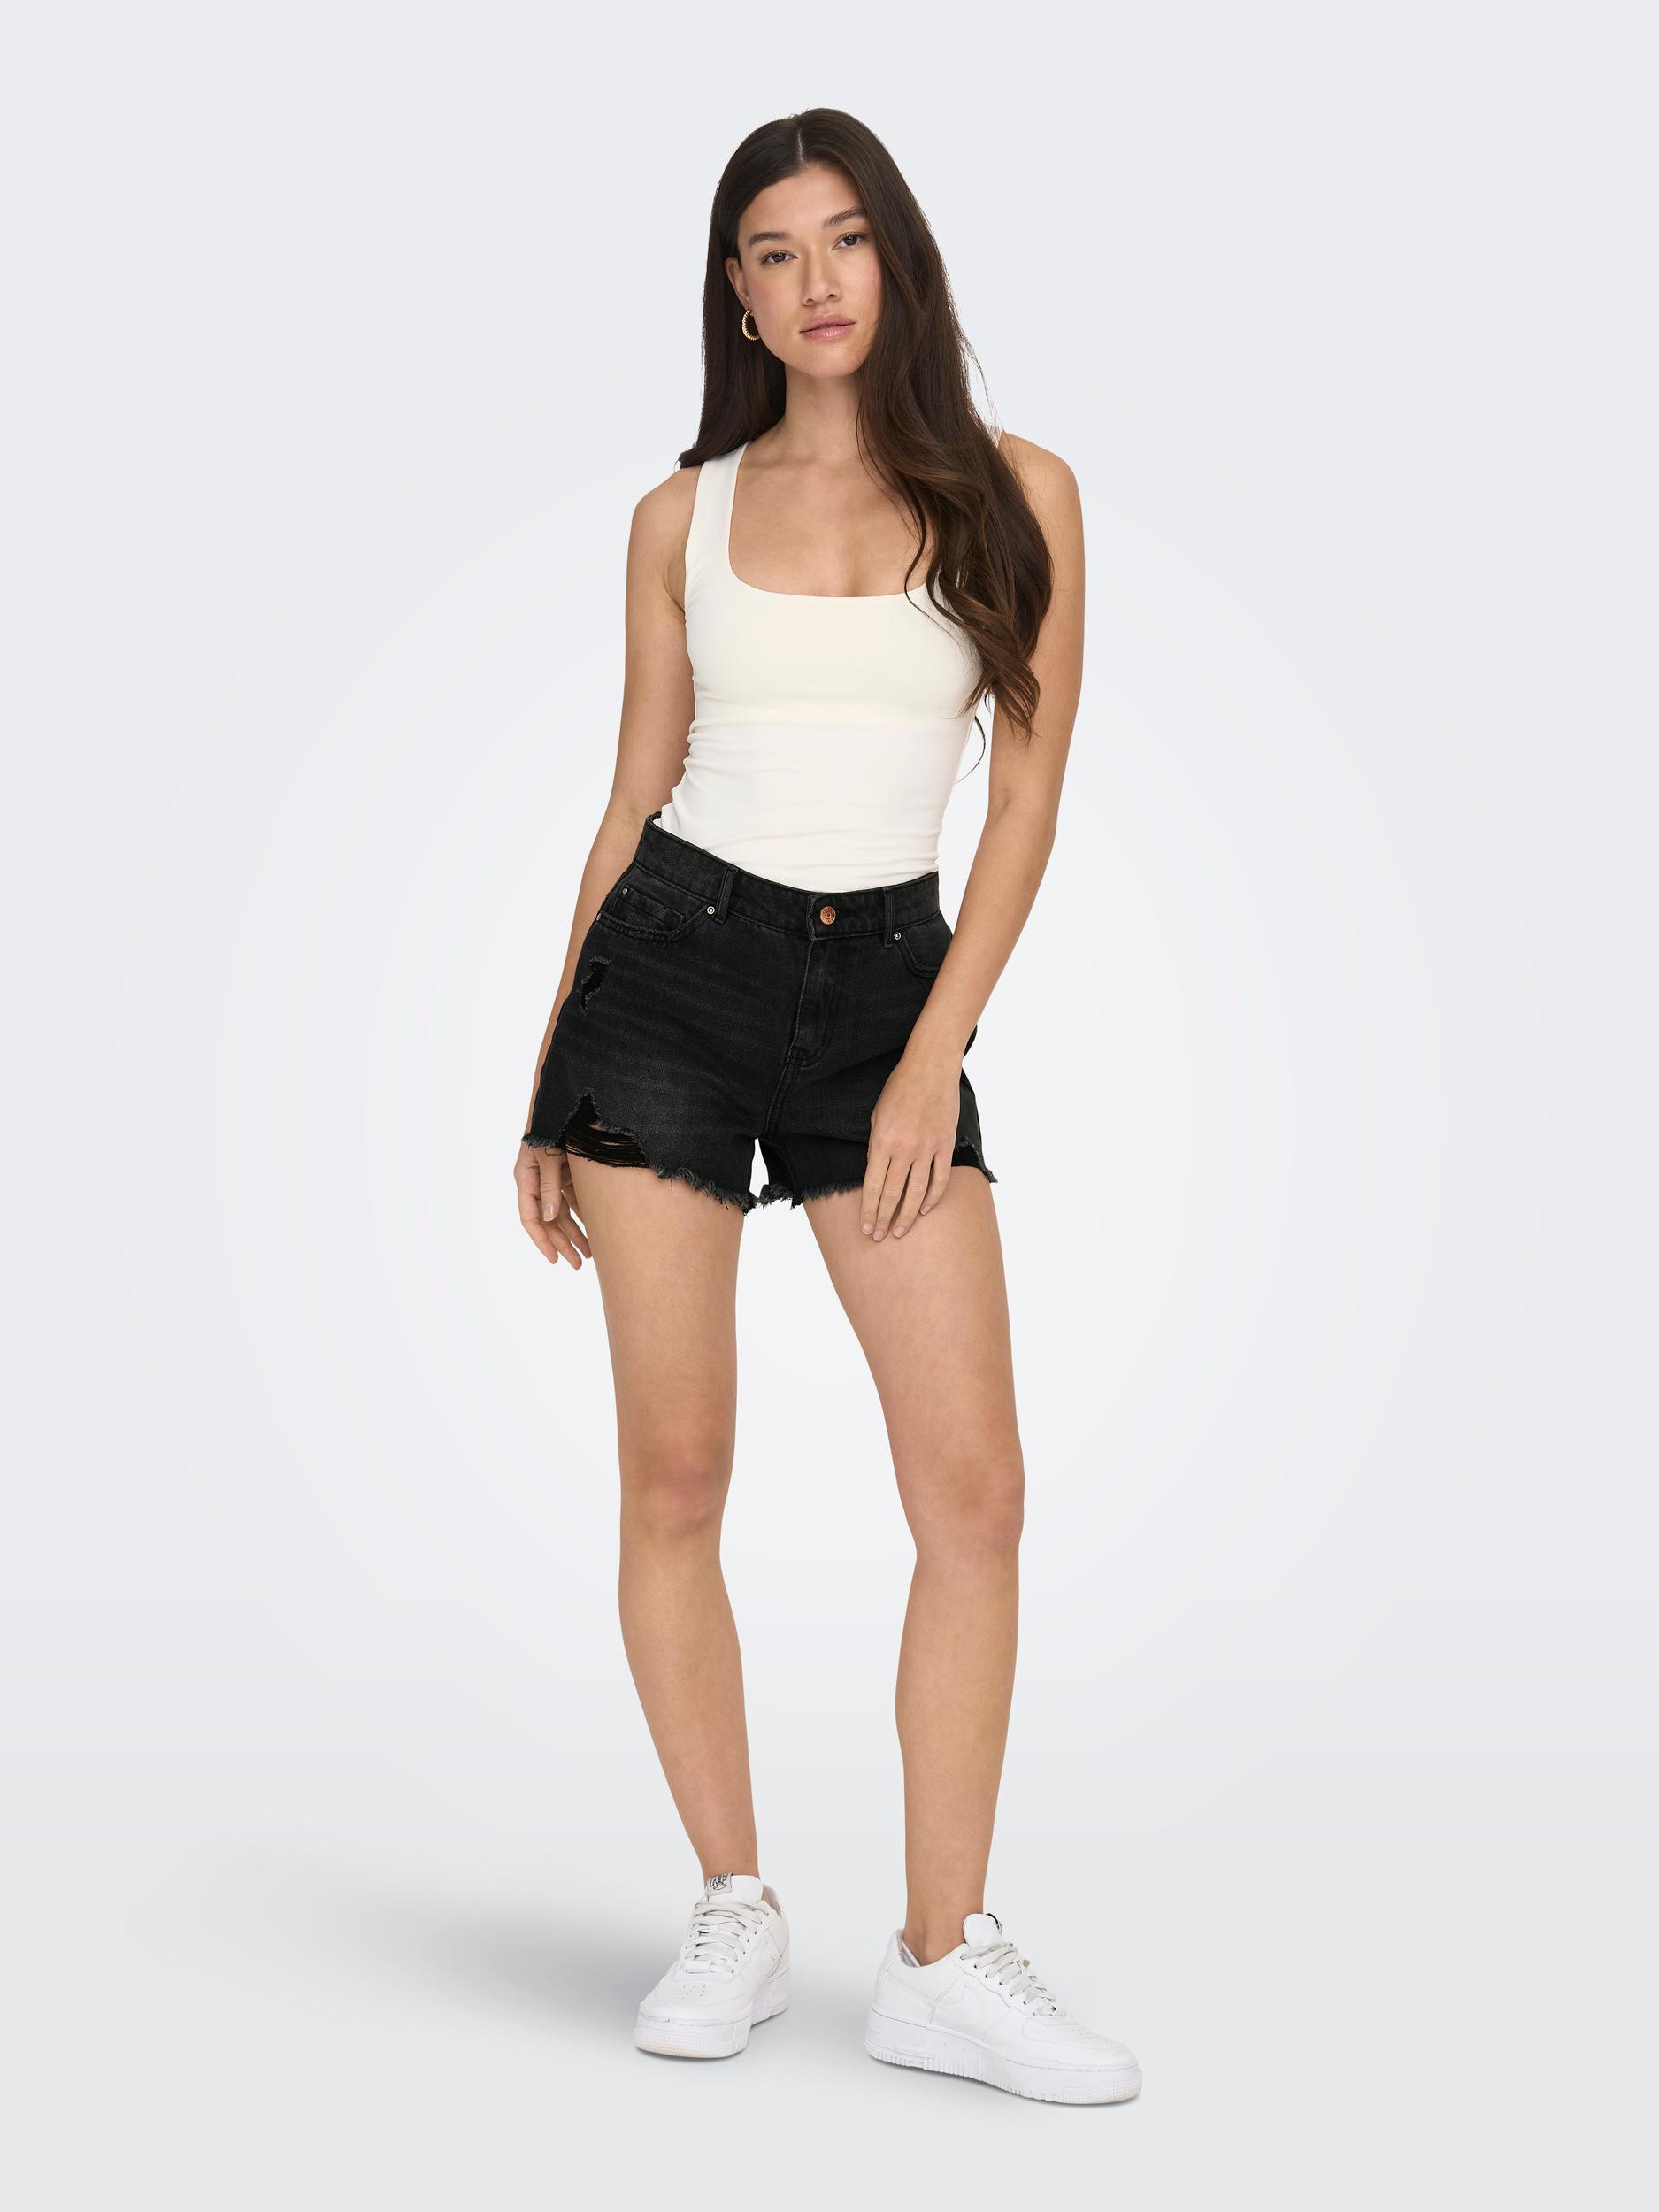 Only - Regular fit five-pocket shorts, Black, large image number 5